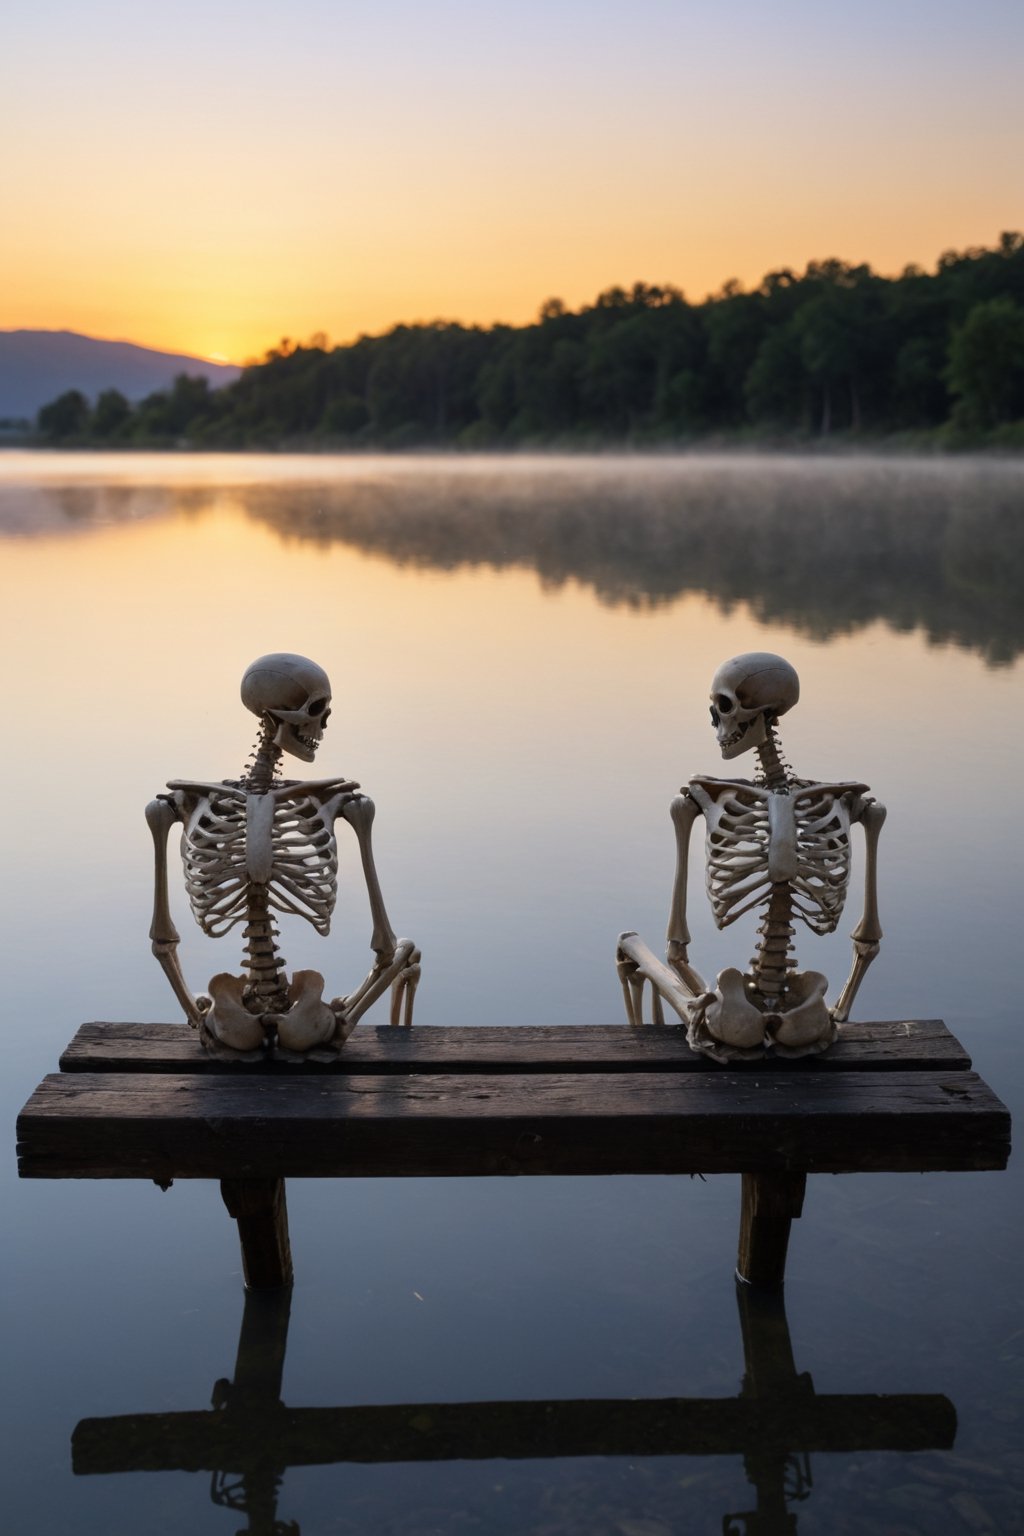 dos (((esqueletos))) sentados en una banca viendo el atardecer en un lago,los esqueletos se ven muy bien definidos y realistas abrazados juntos bien del atardecer